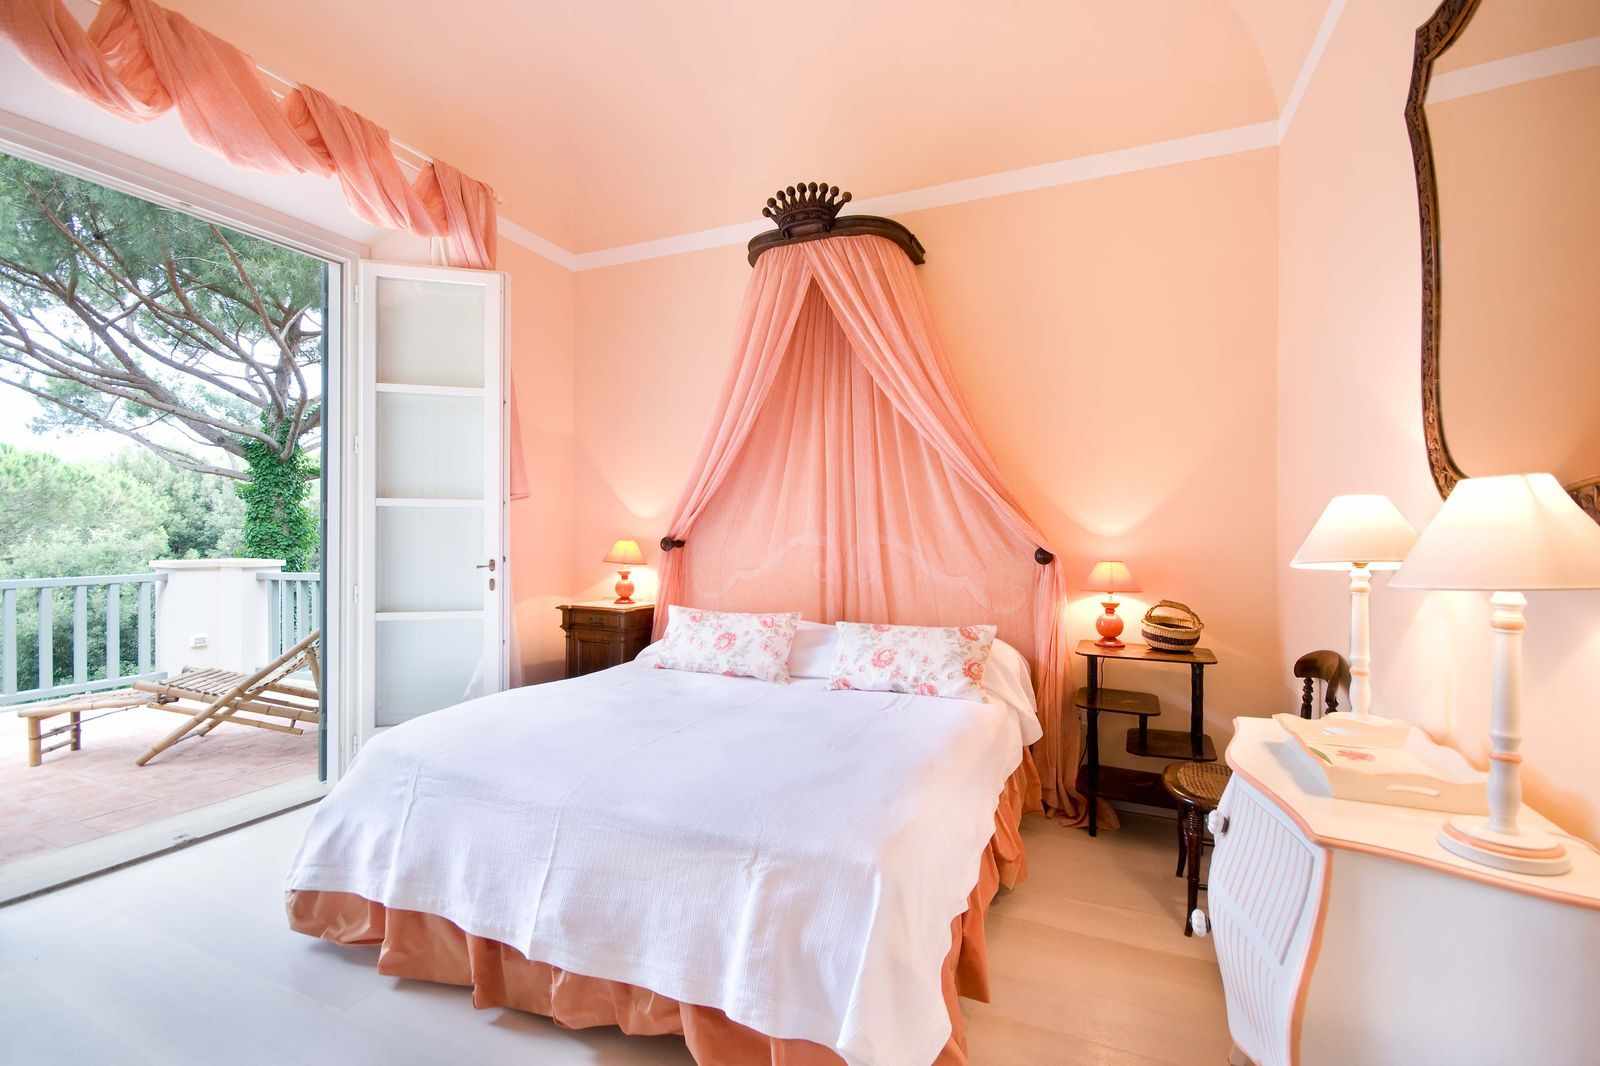 neparastas persiku krāsas apvienošanas piemērs dzīvokļa dizainā